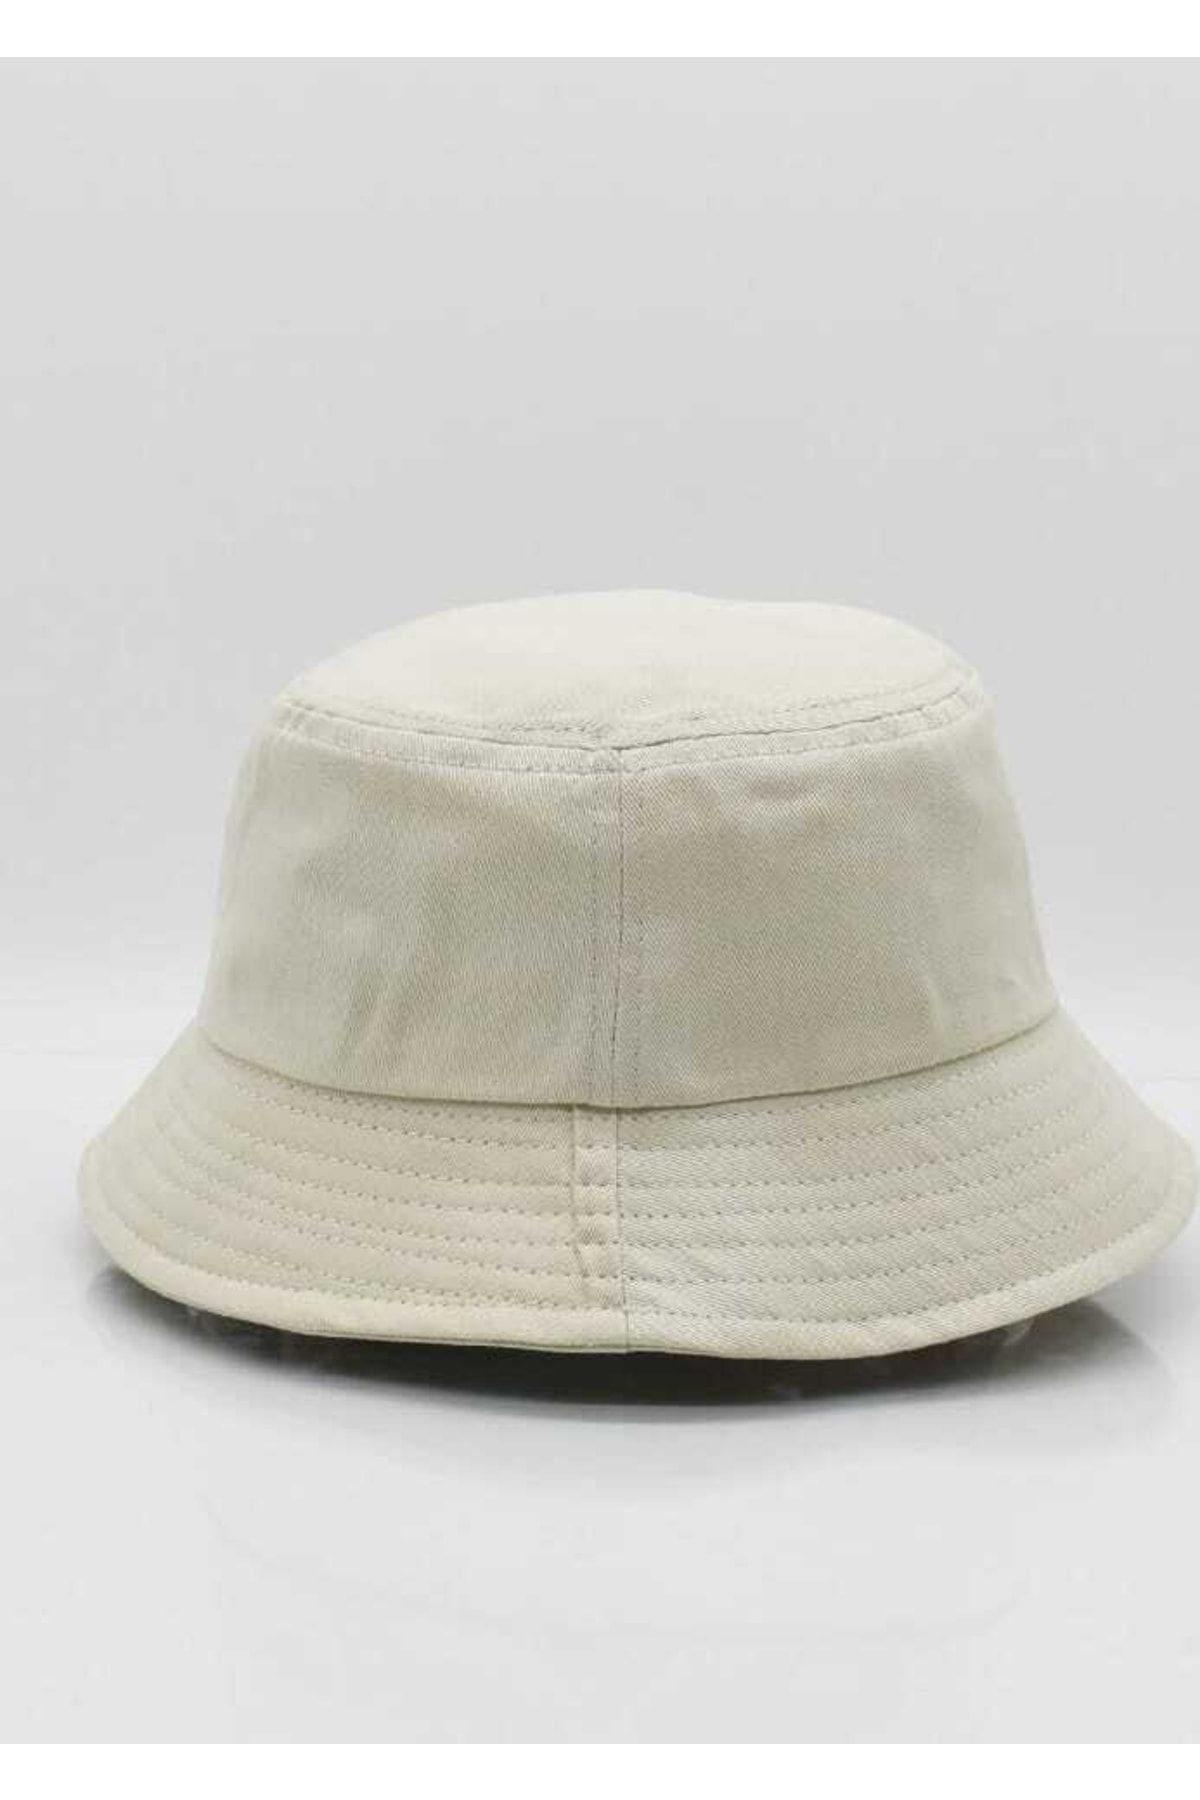 Betülce Şapka Unisex Siyah Bucket Balıkçı Şapka - Açık Bej